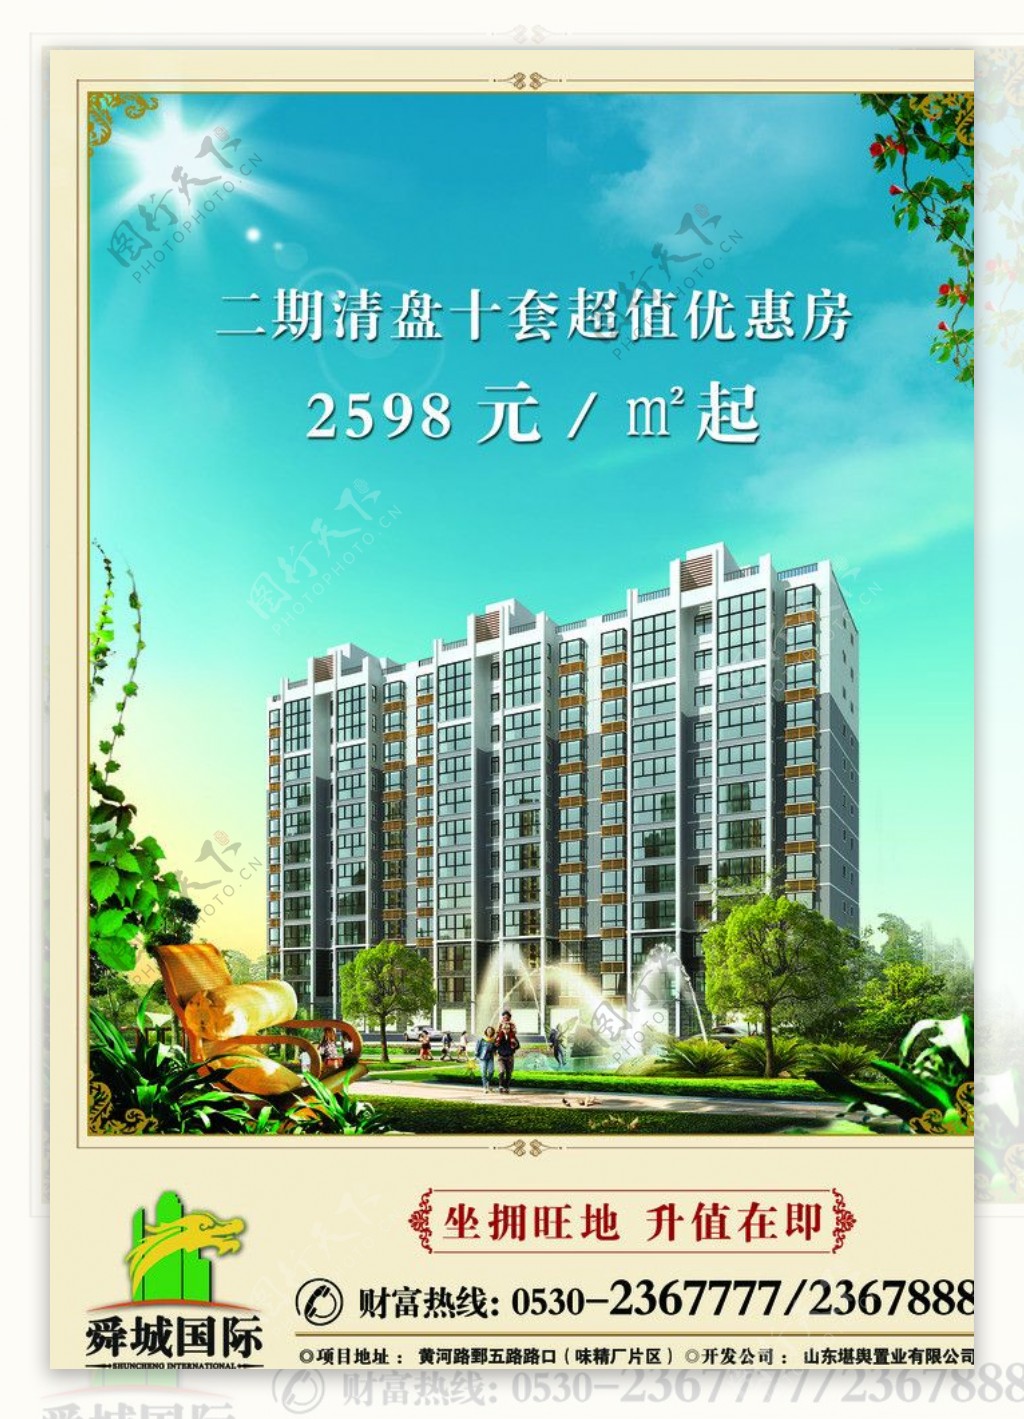 舜城国际住宅特价房图片